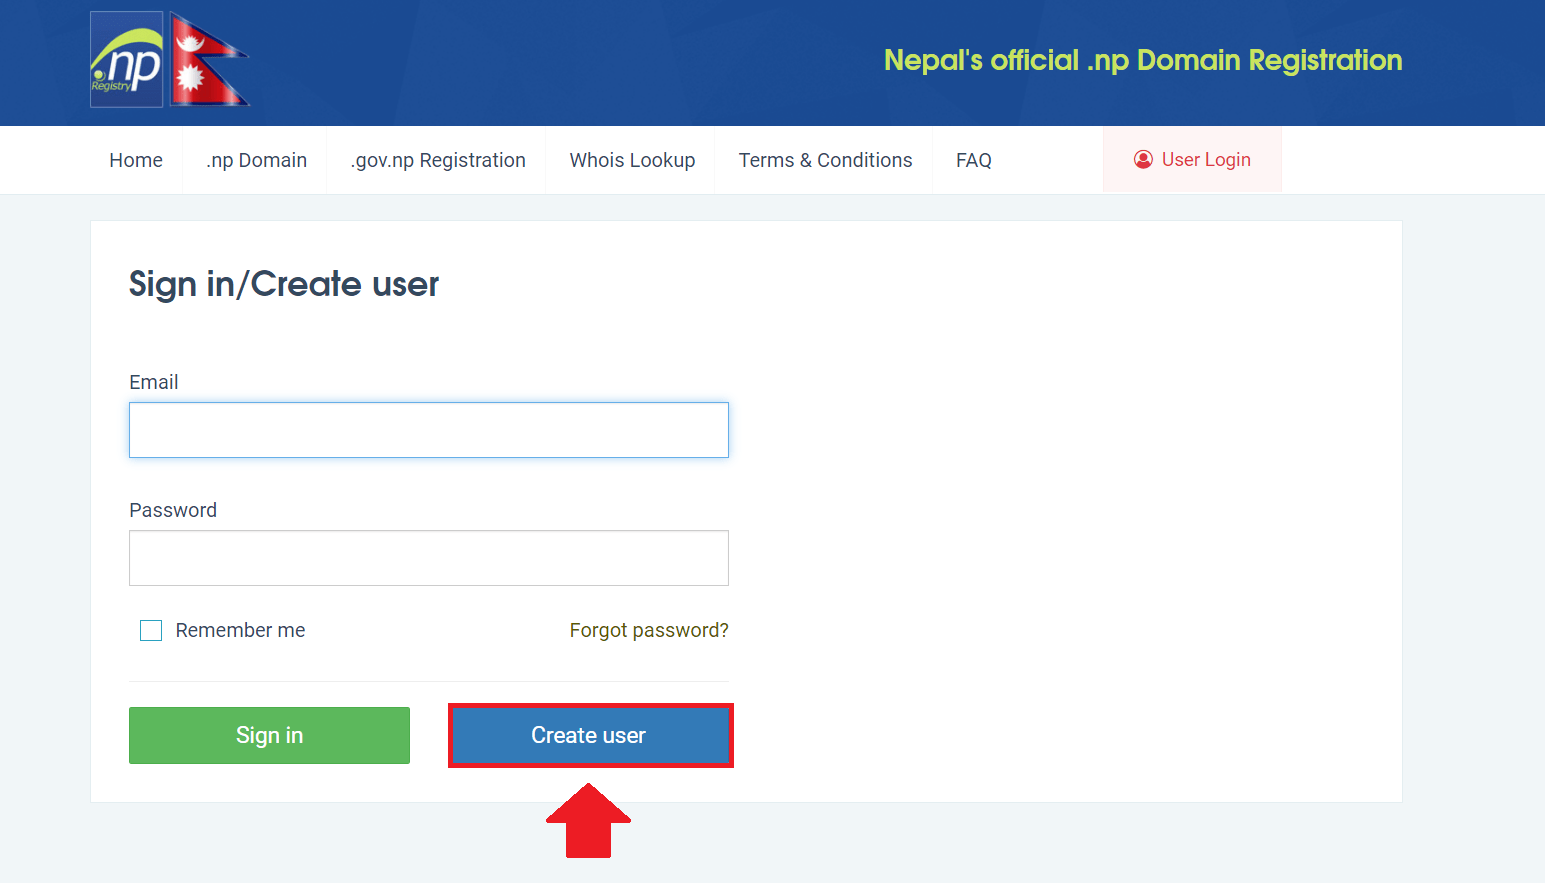 Enregistrez un domaine .com.np gratuitement